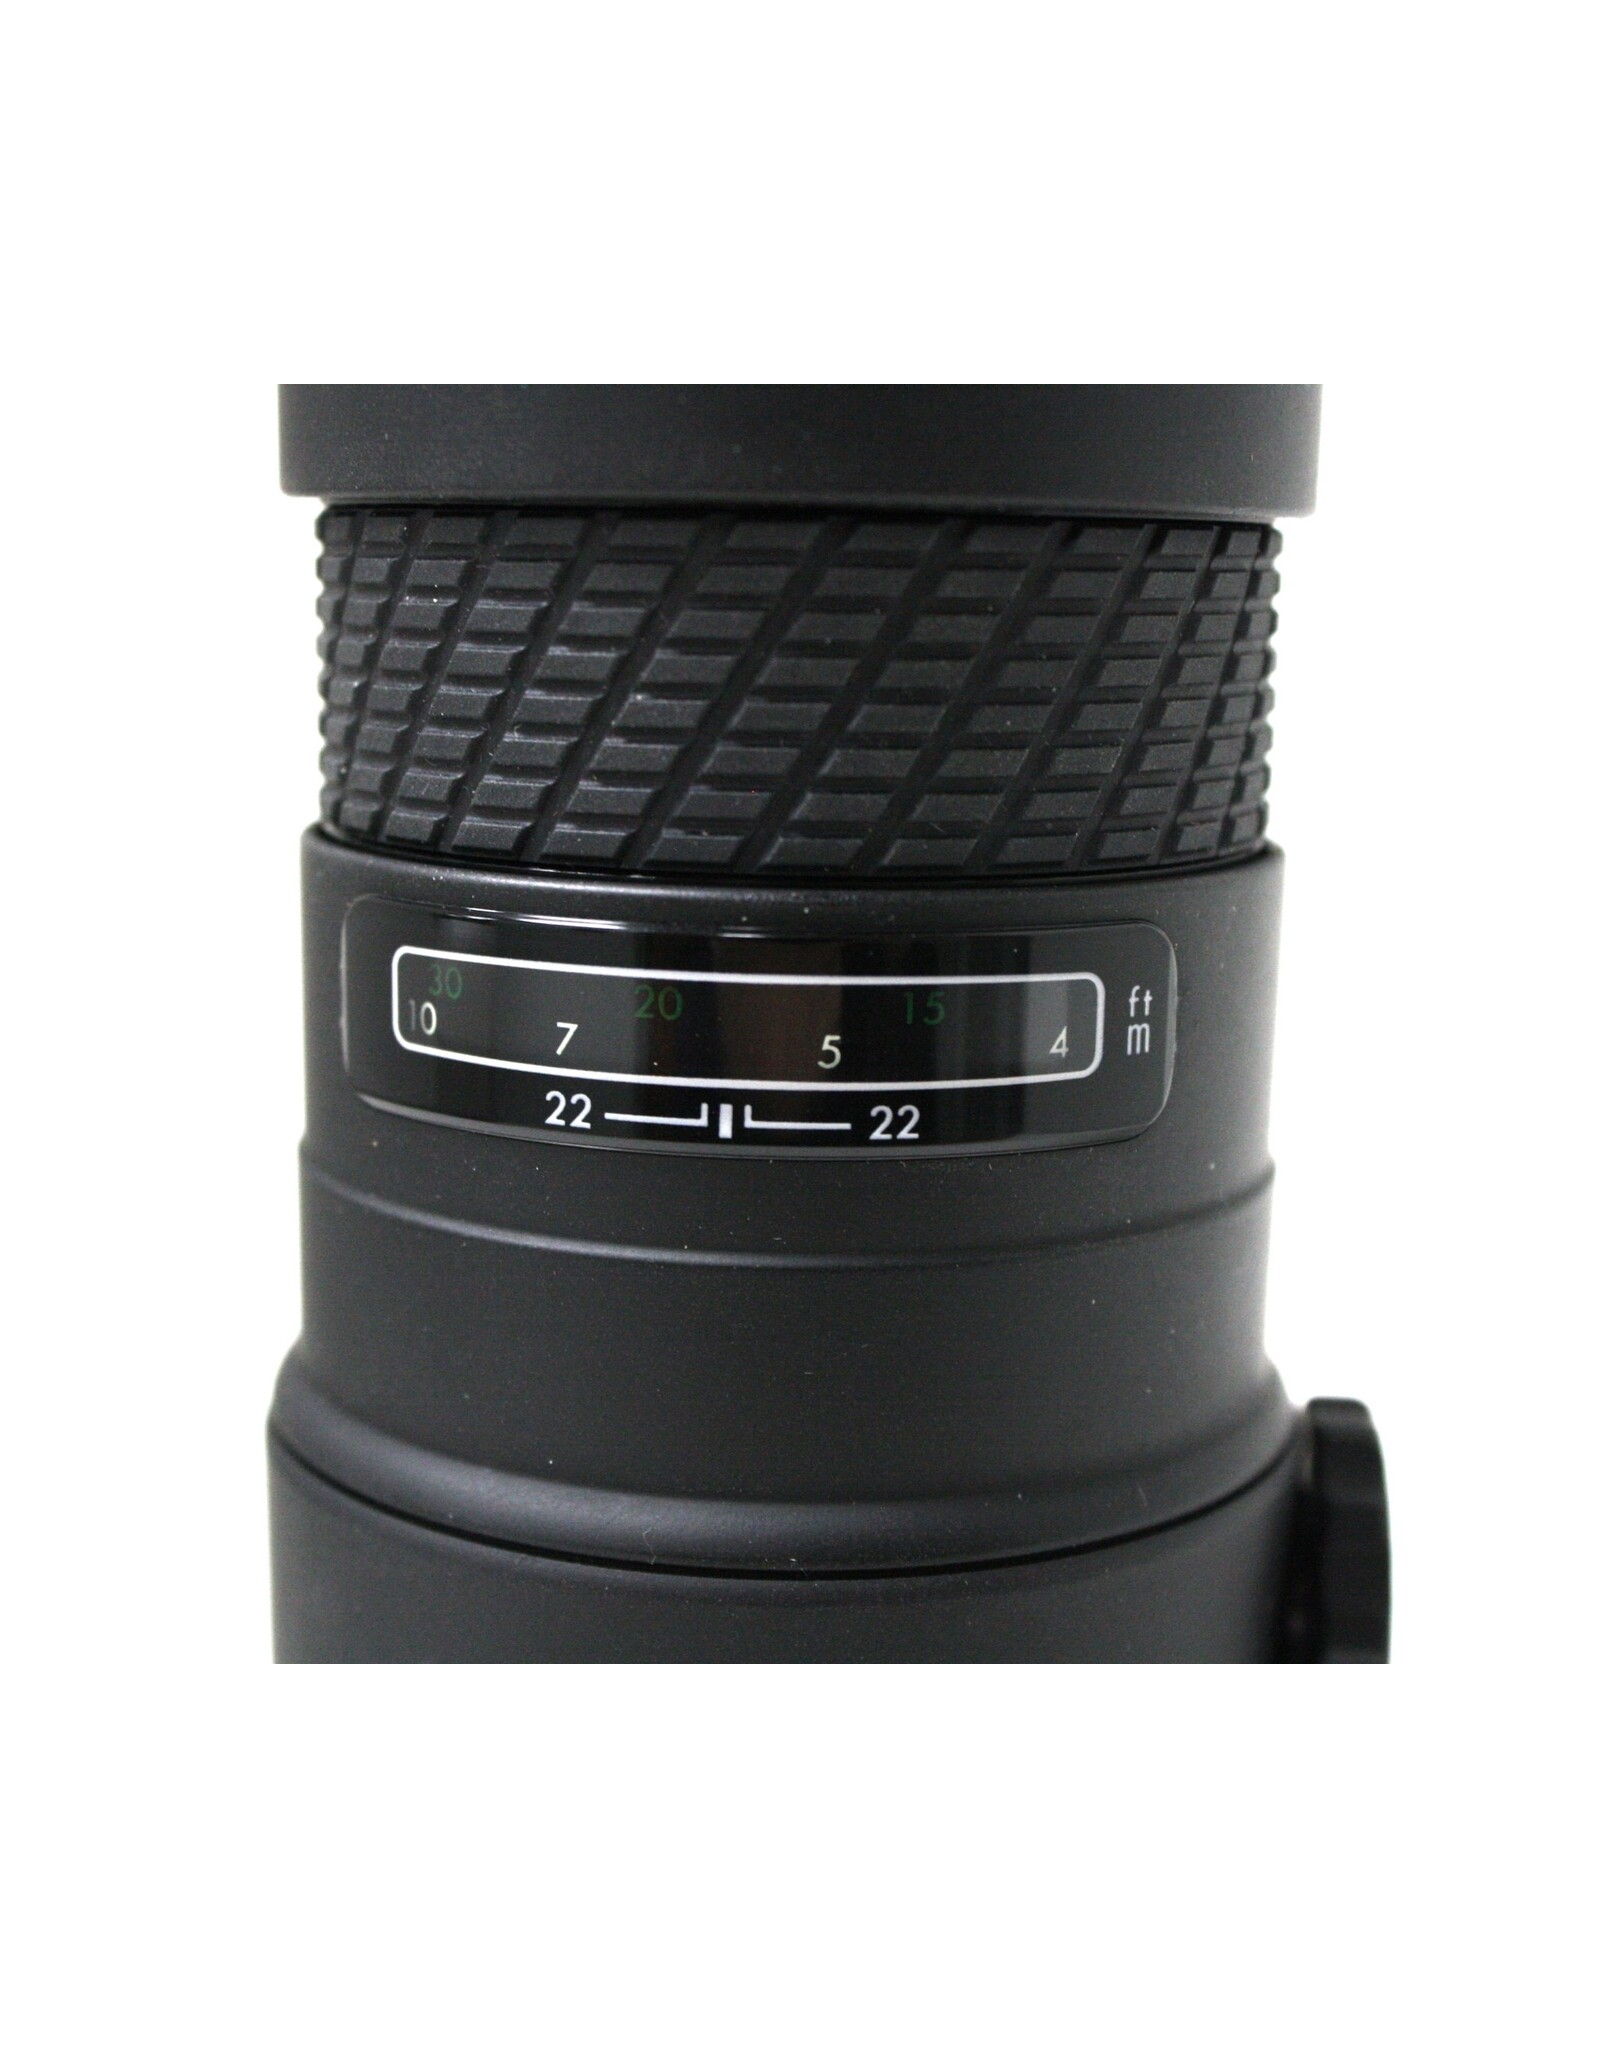 Sigma Sigma AF Telephoto 400mm 5.6 Lens  for Nikon AF (Pre-Owned)